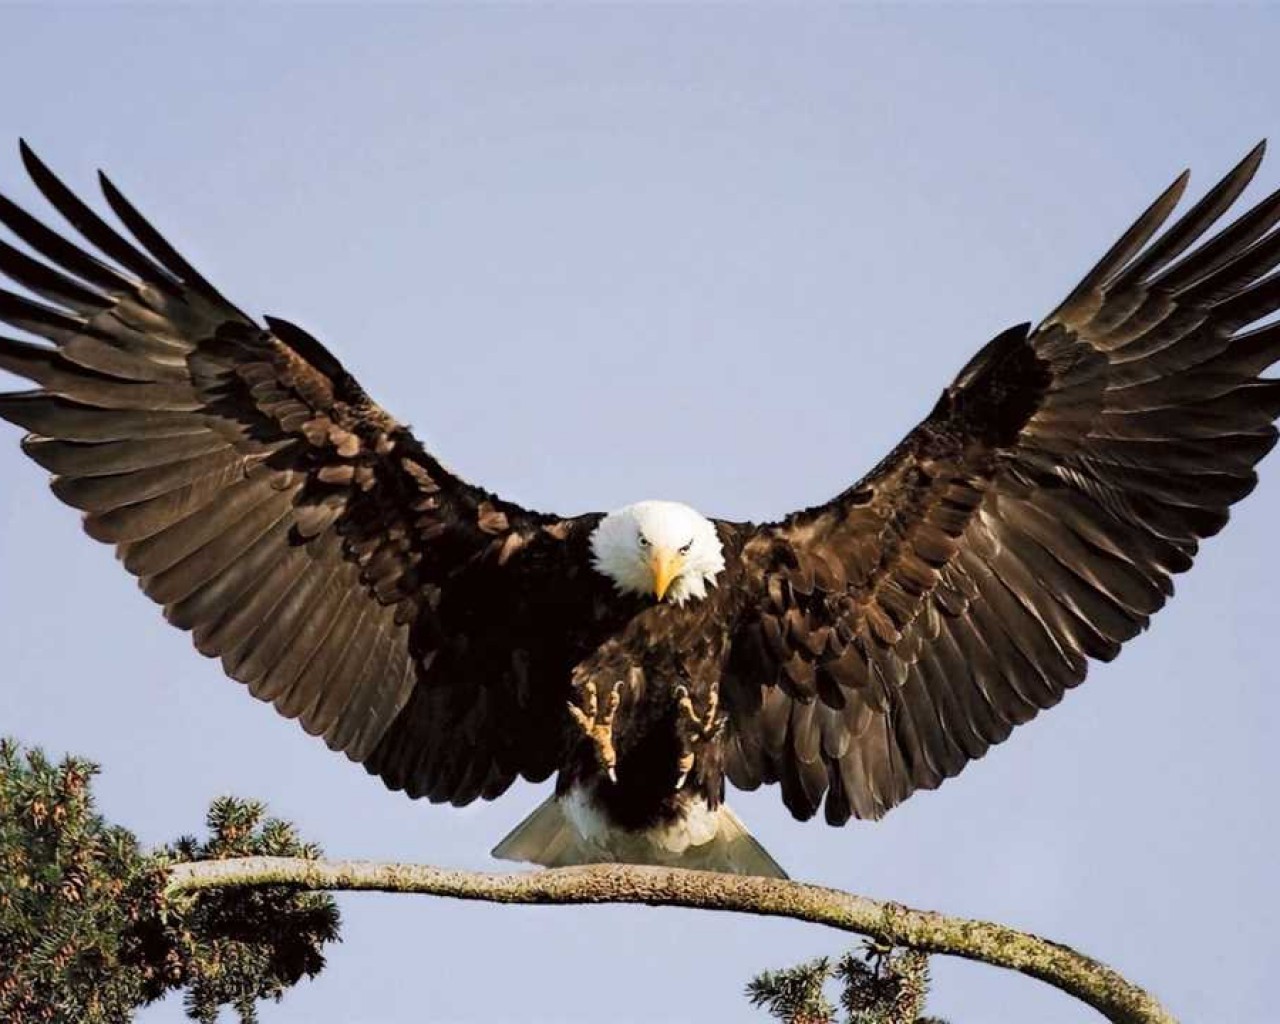 Орел - величественная птица соколиных семейства, символ силы, мудрости и свободы, удивительная живая природная картина!